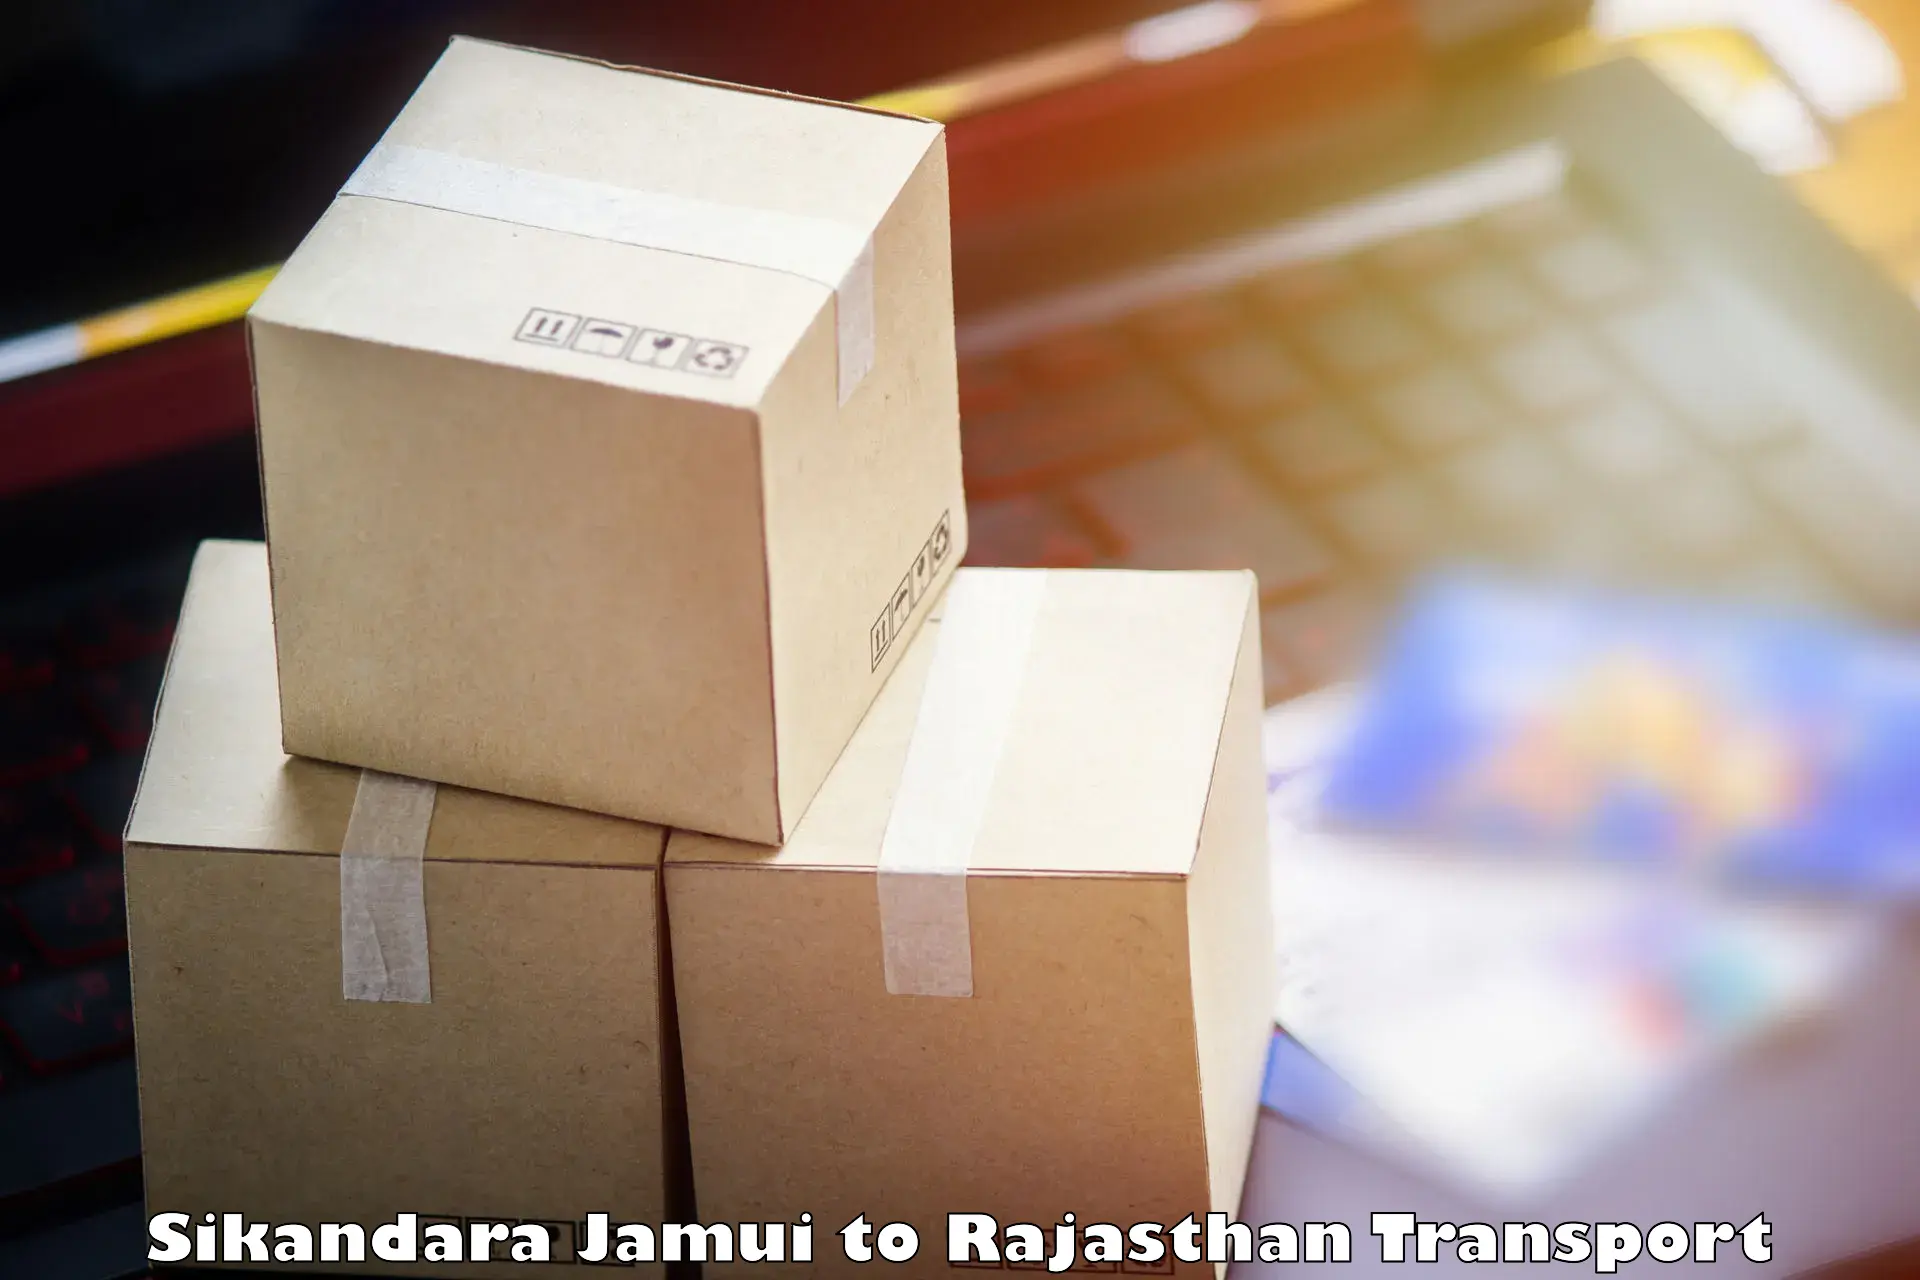 Shipping services Sikandara Jamui to Pratapgarh Rajasthan